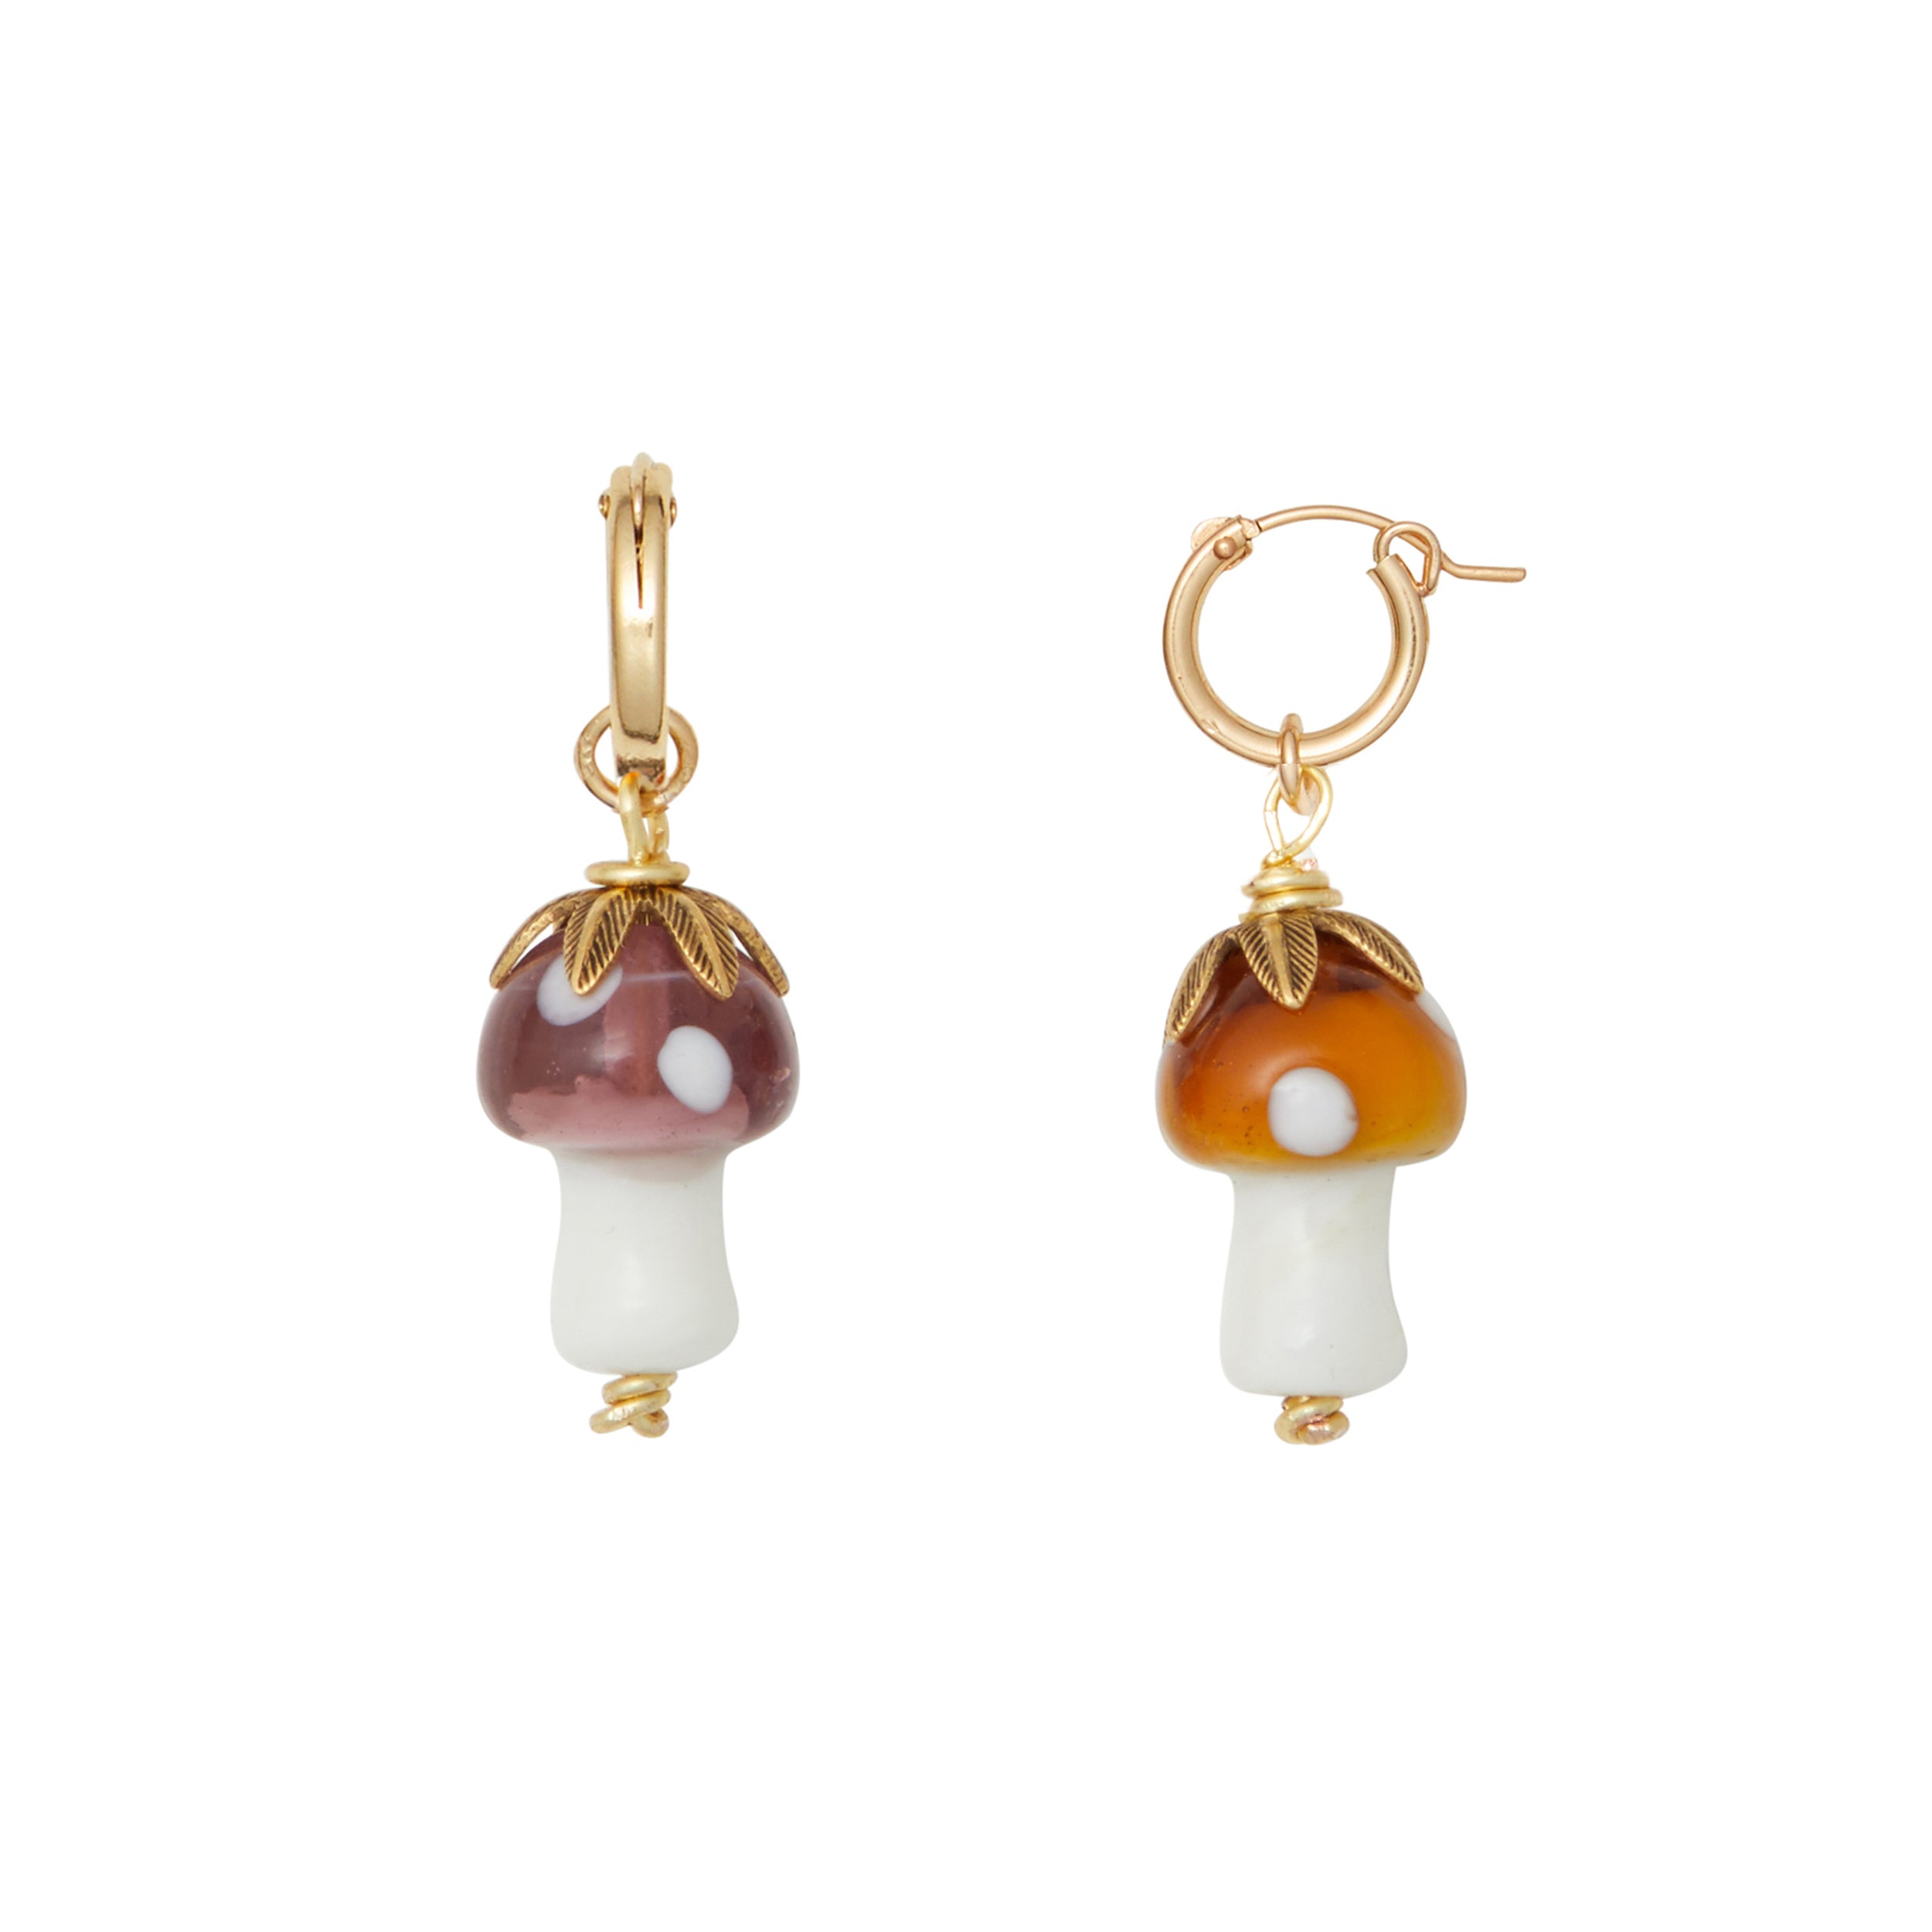 Showroom of 18 kt gold drop classy 2 tone screw back women earrings 3.770  grams | Jewelxy - 225412